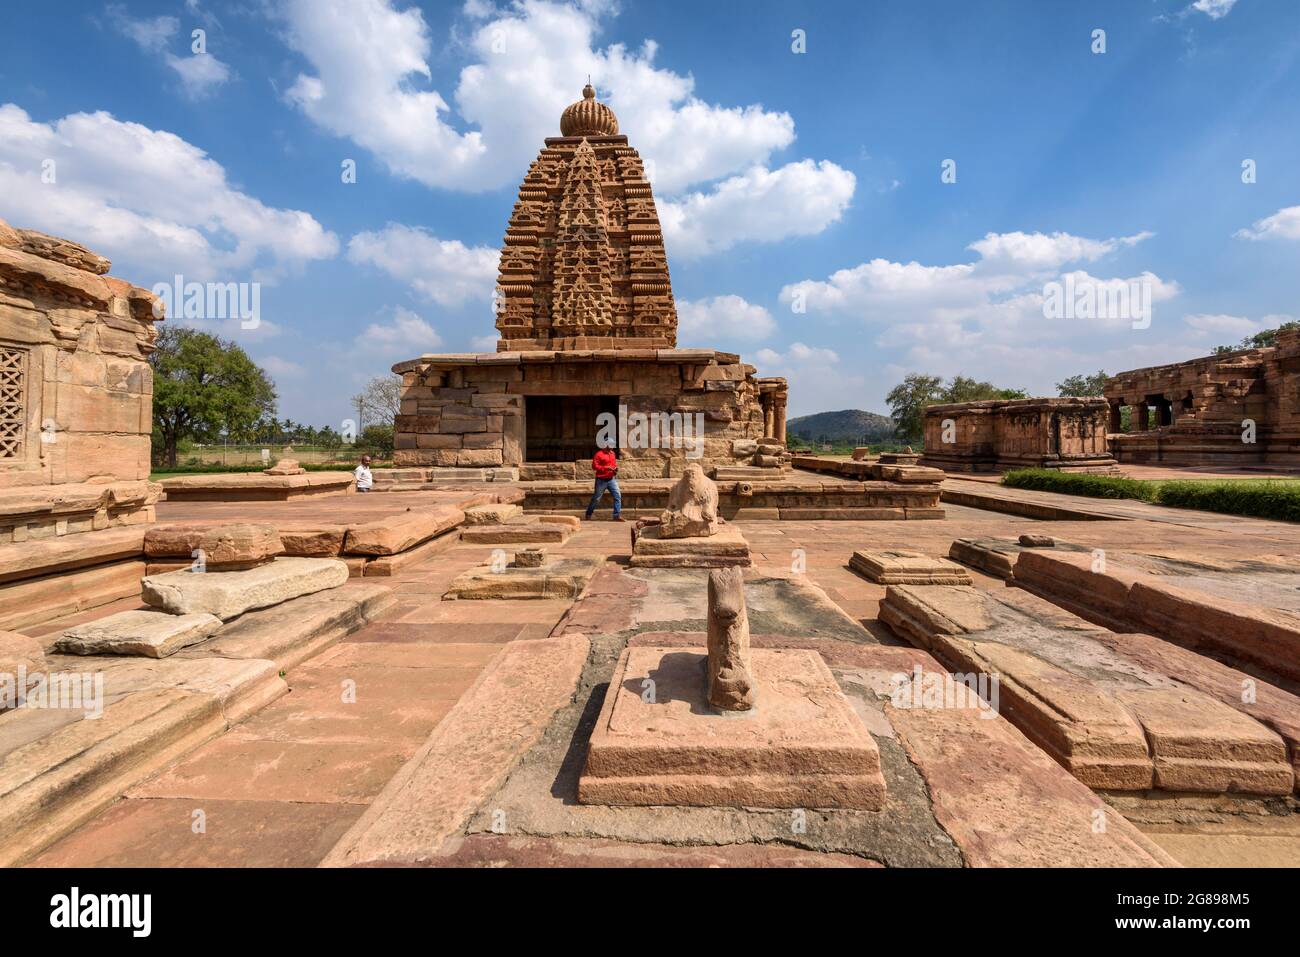 Pattadakal, Karnataka, India - 11 de enero de 2020 : El templo de Galagnatha en el complejo del templo de Pattadakal, que data del siglo 7th-8th, el Chaluky temprano Foto de stock